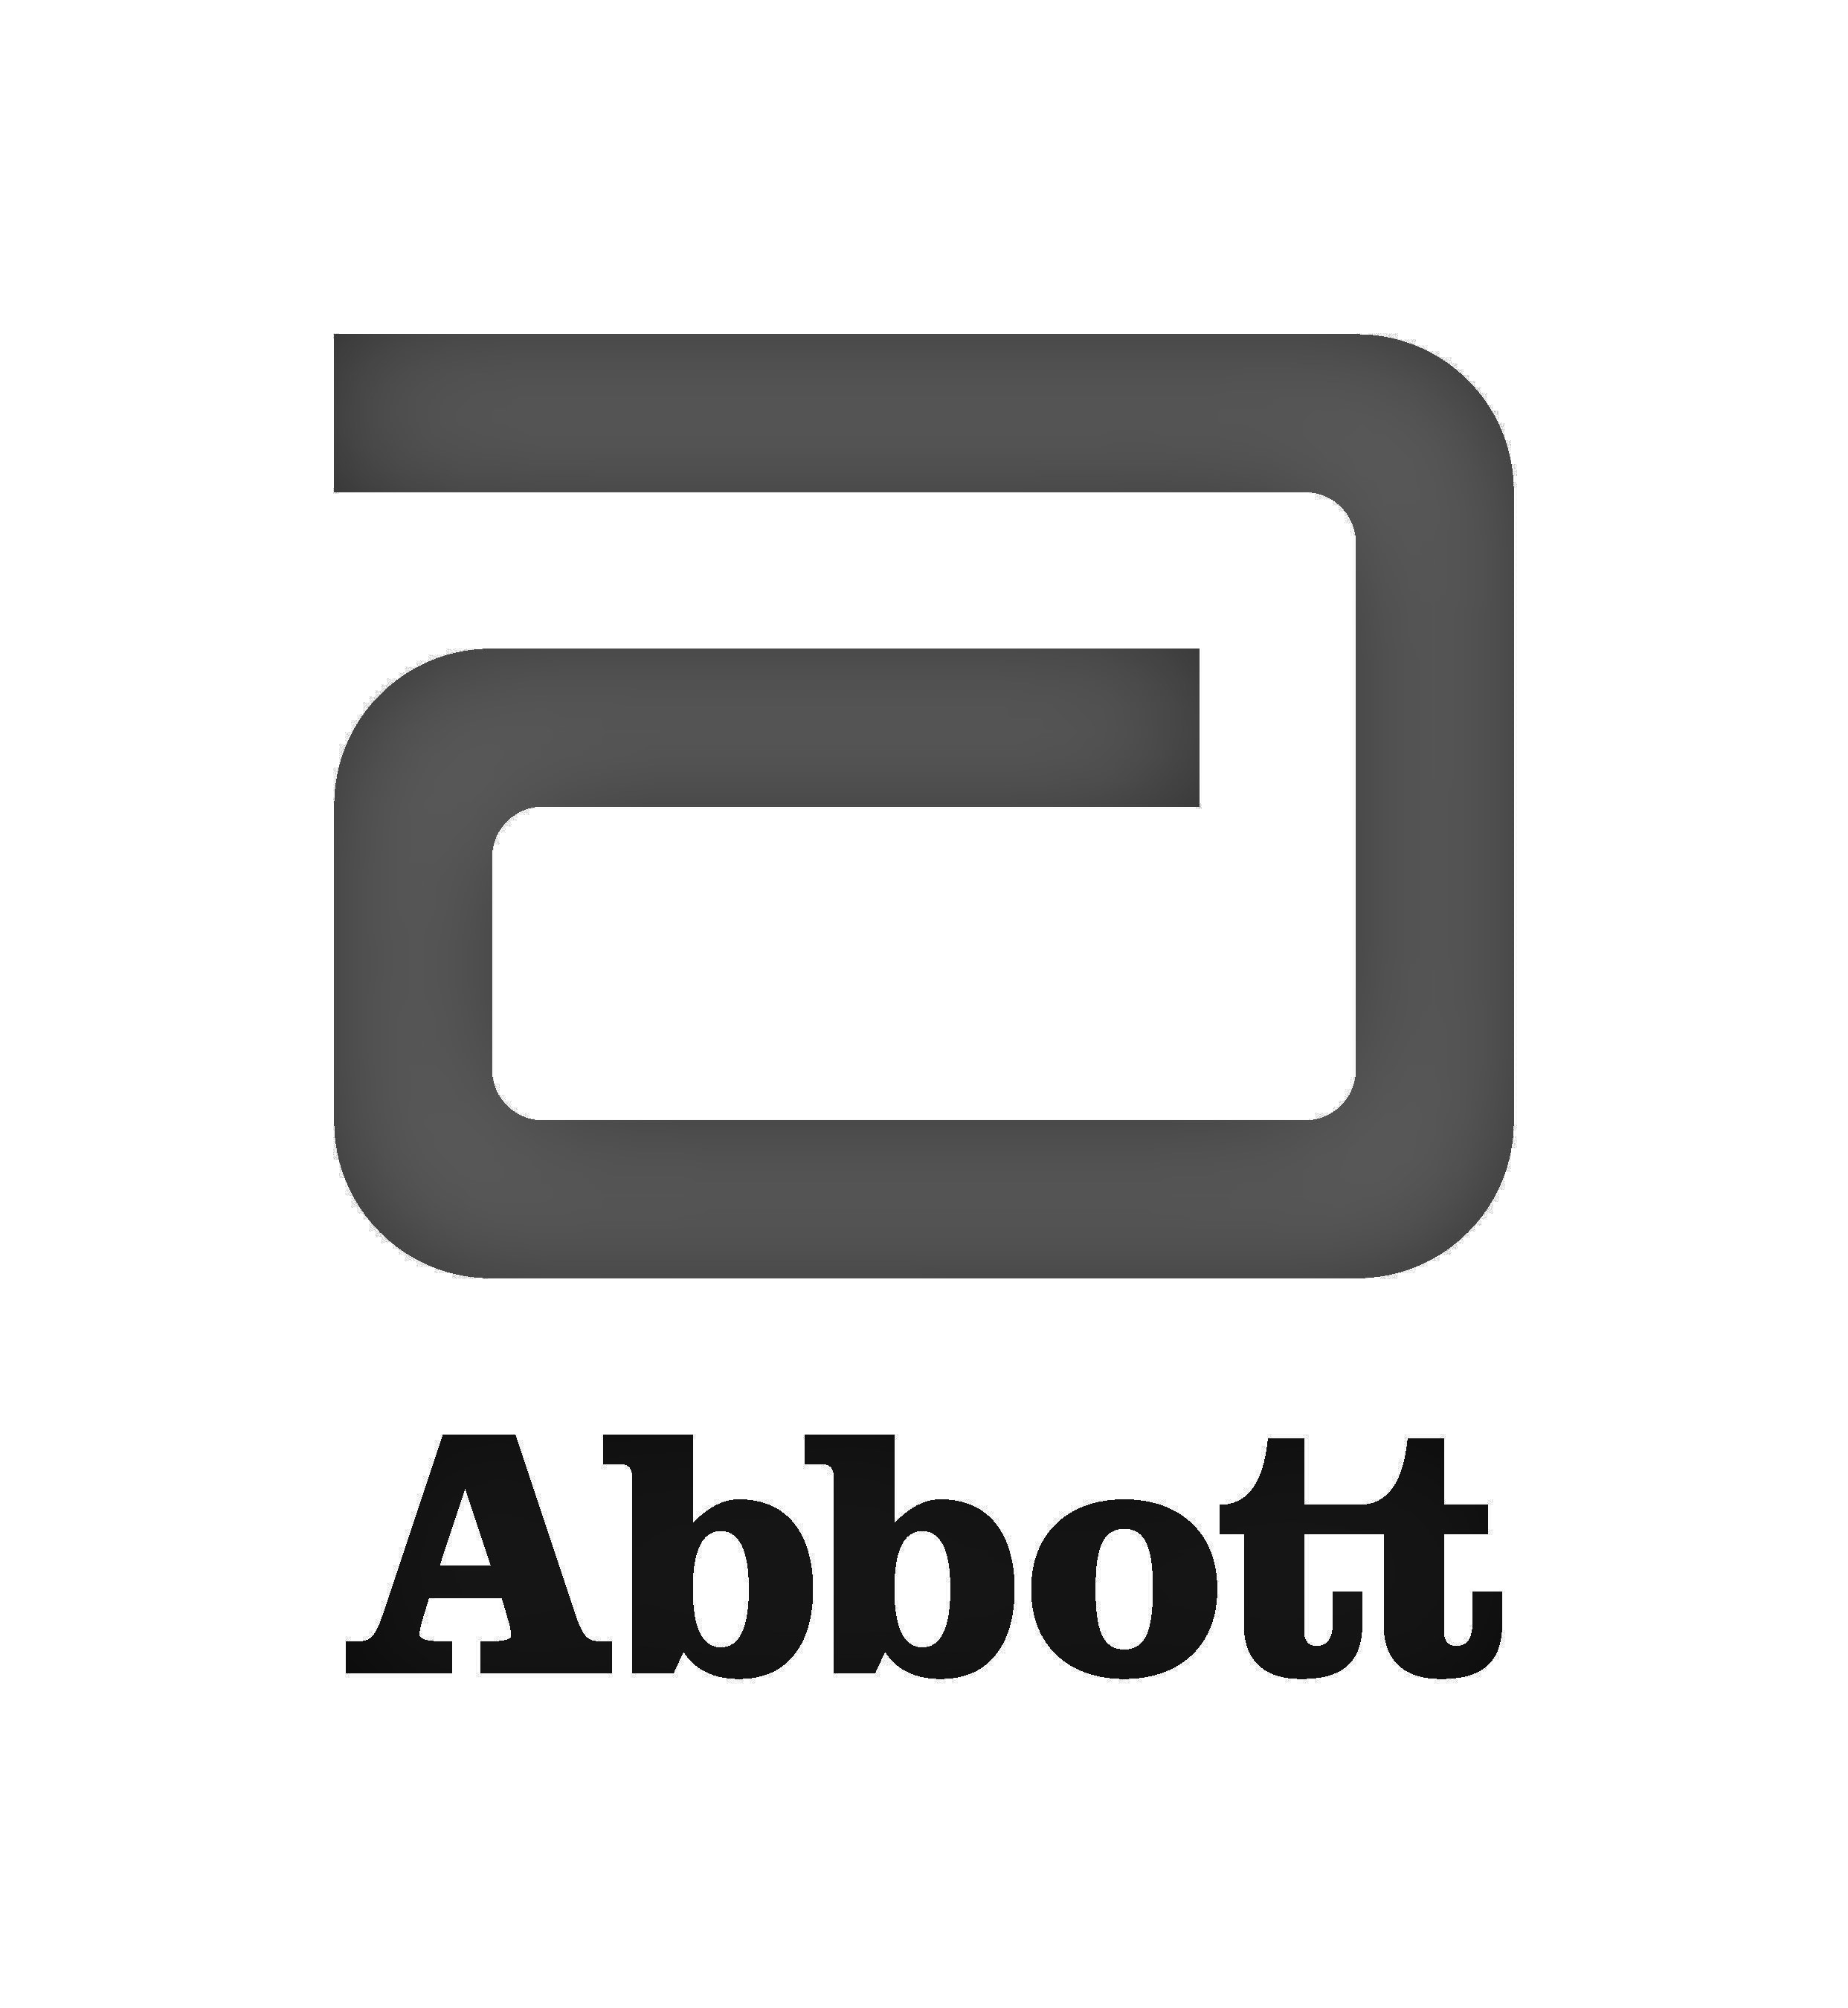 Abbott GmbH & Co. KG